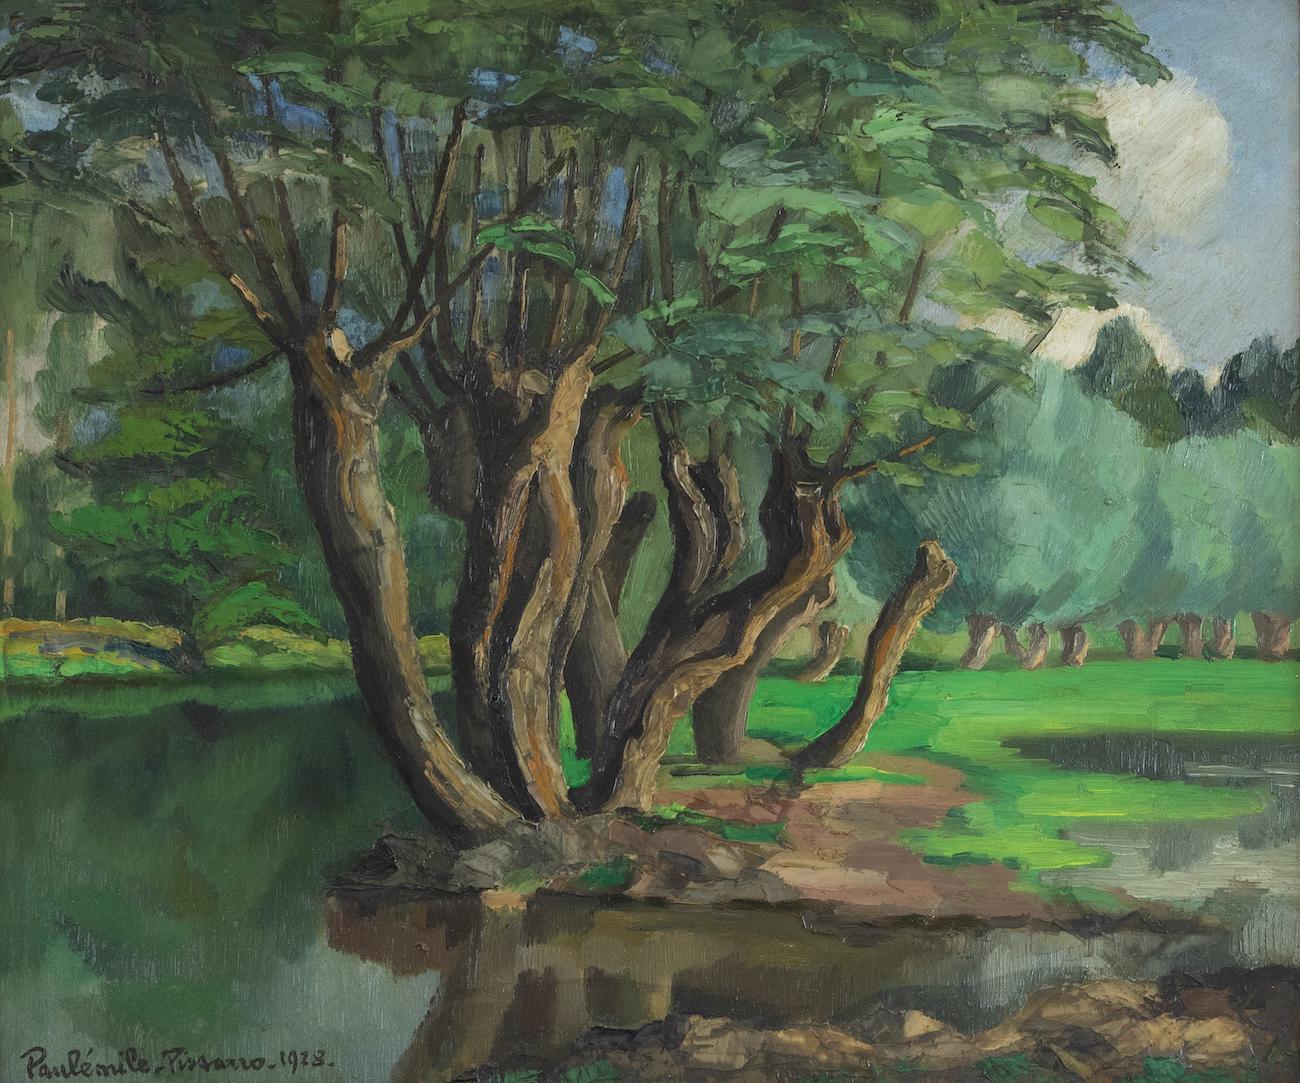 Paul Emile Pissarro Landscape Painting - L'Arbre au Bord de l'Eau by Paulémile Pissarro - Post-Impressionist river scene